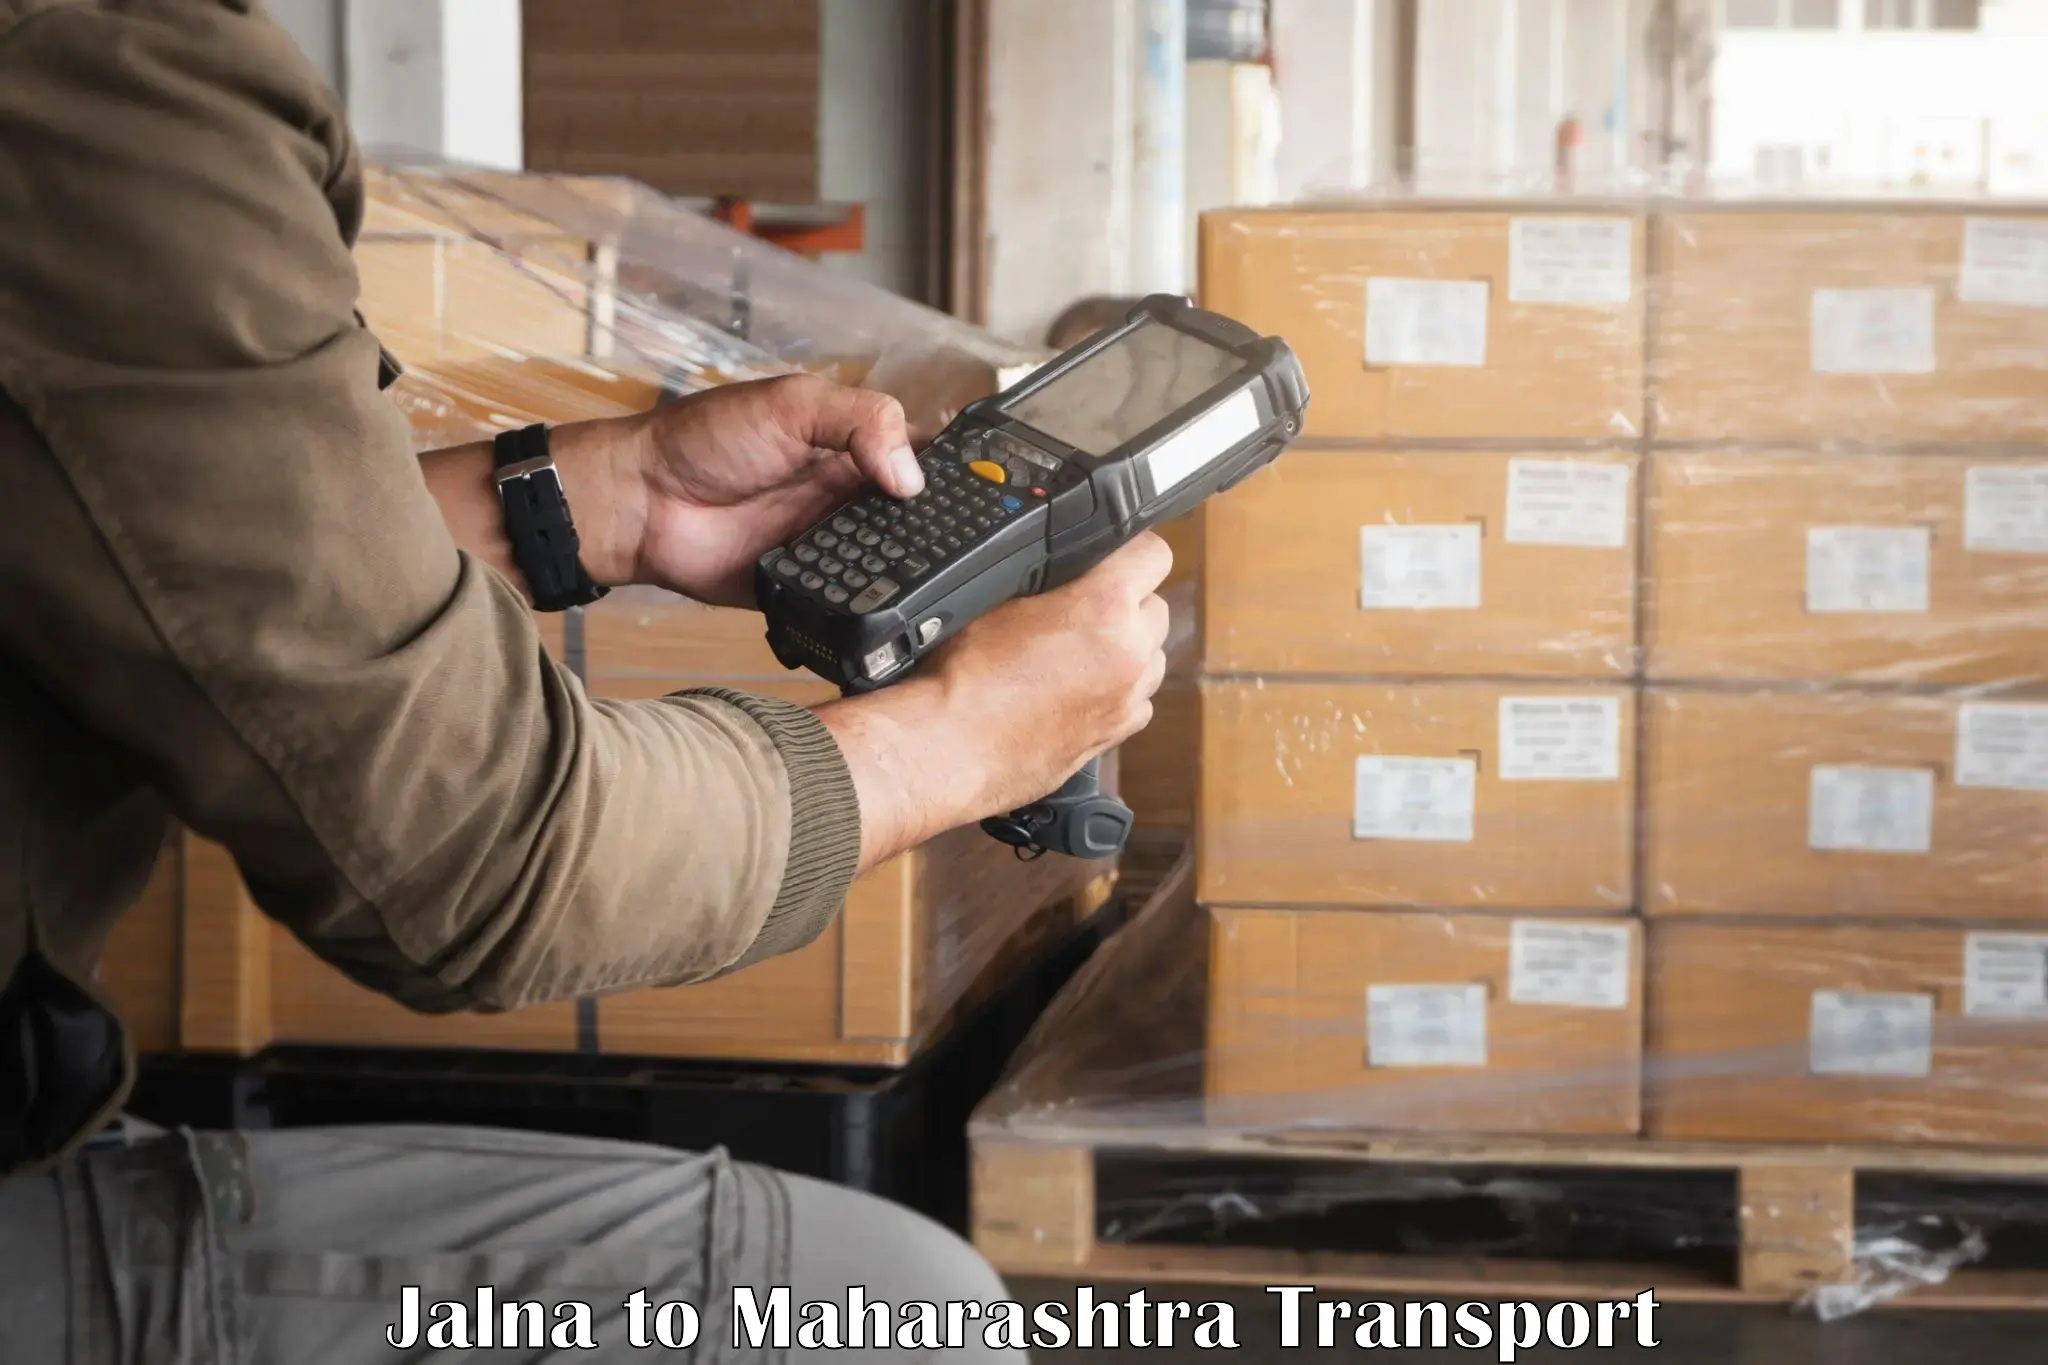 Daily transport service Jalna to Lonavala